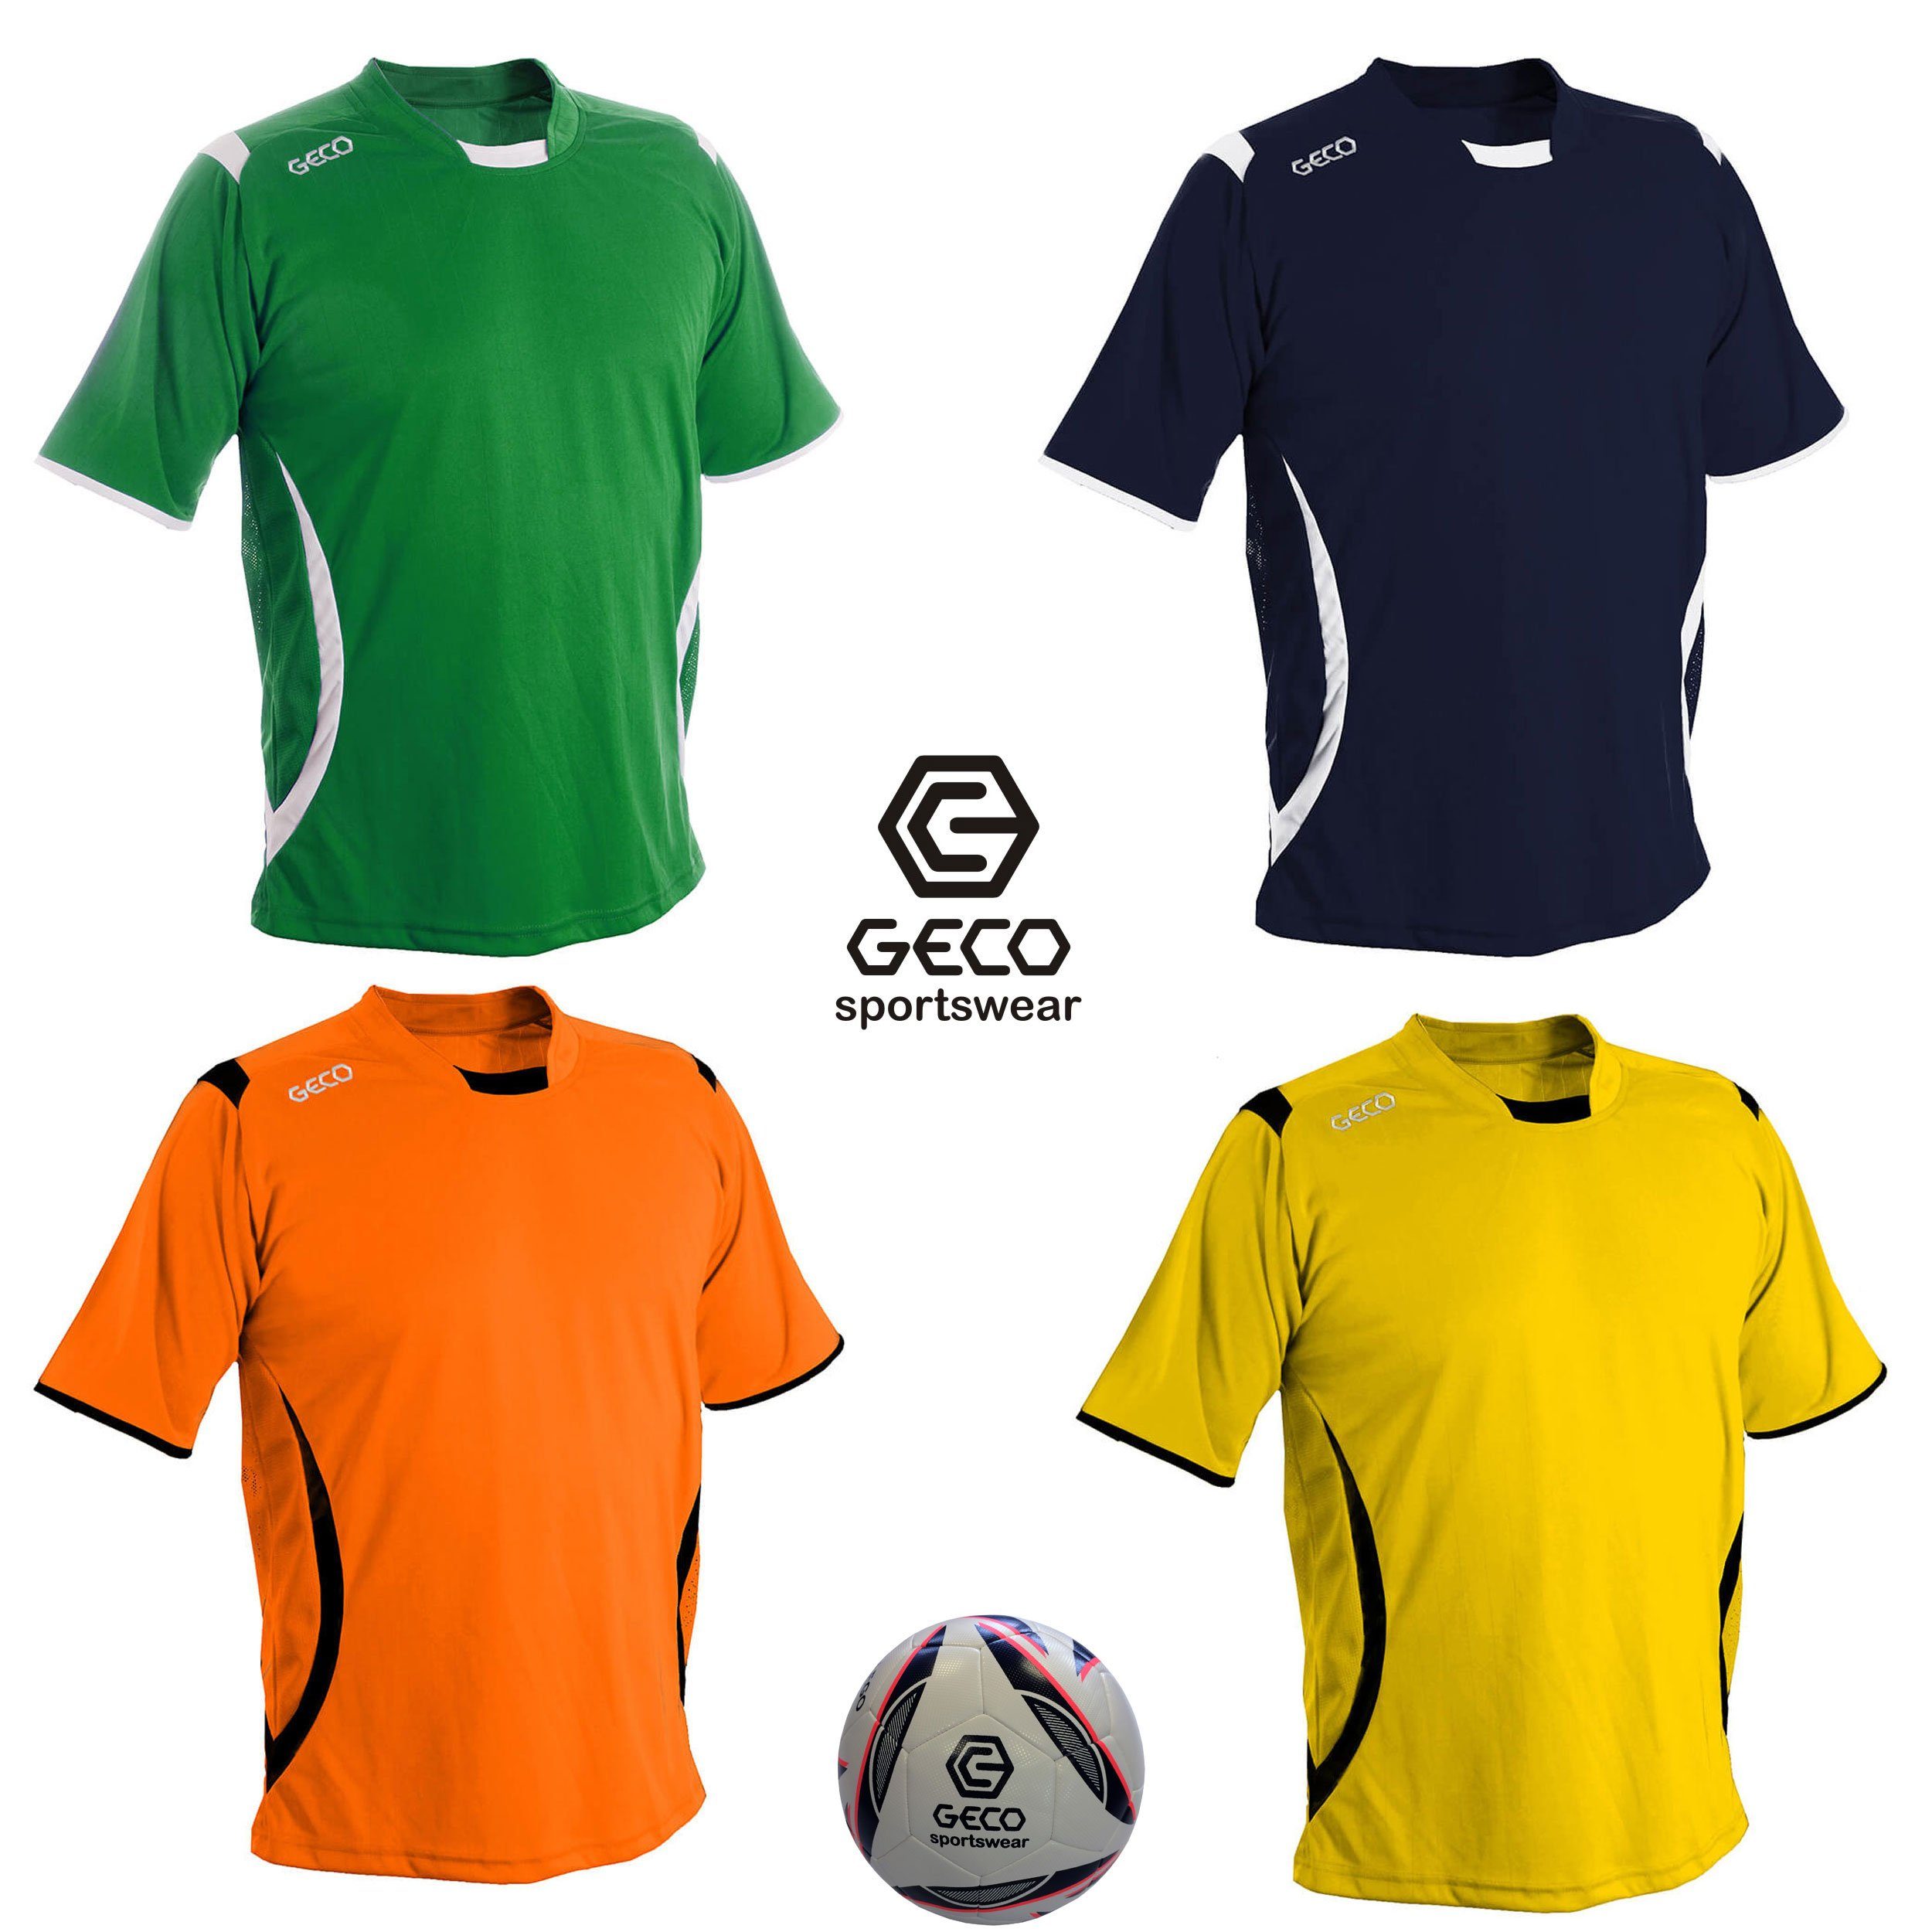 Geco Sportswear Fußballtrikot Fußballtrikot Geco Fußball Trikot Levante kurzarm zweifarbig seitliche Mesh Einsätze grün/weiß